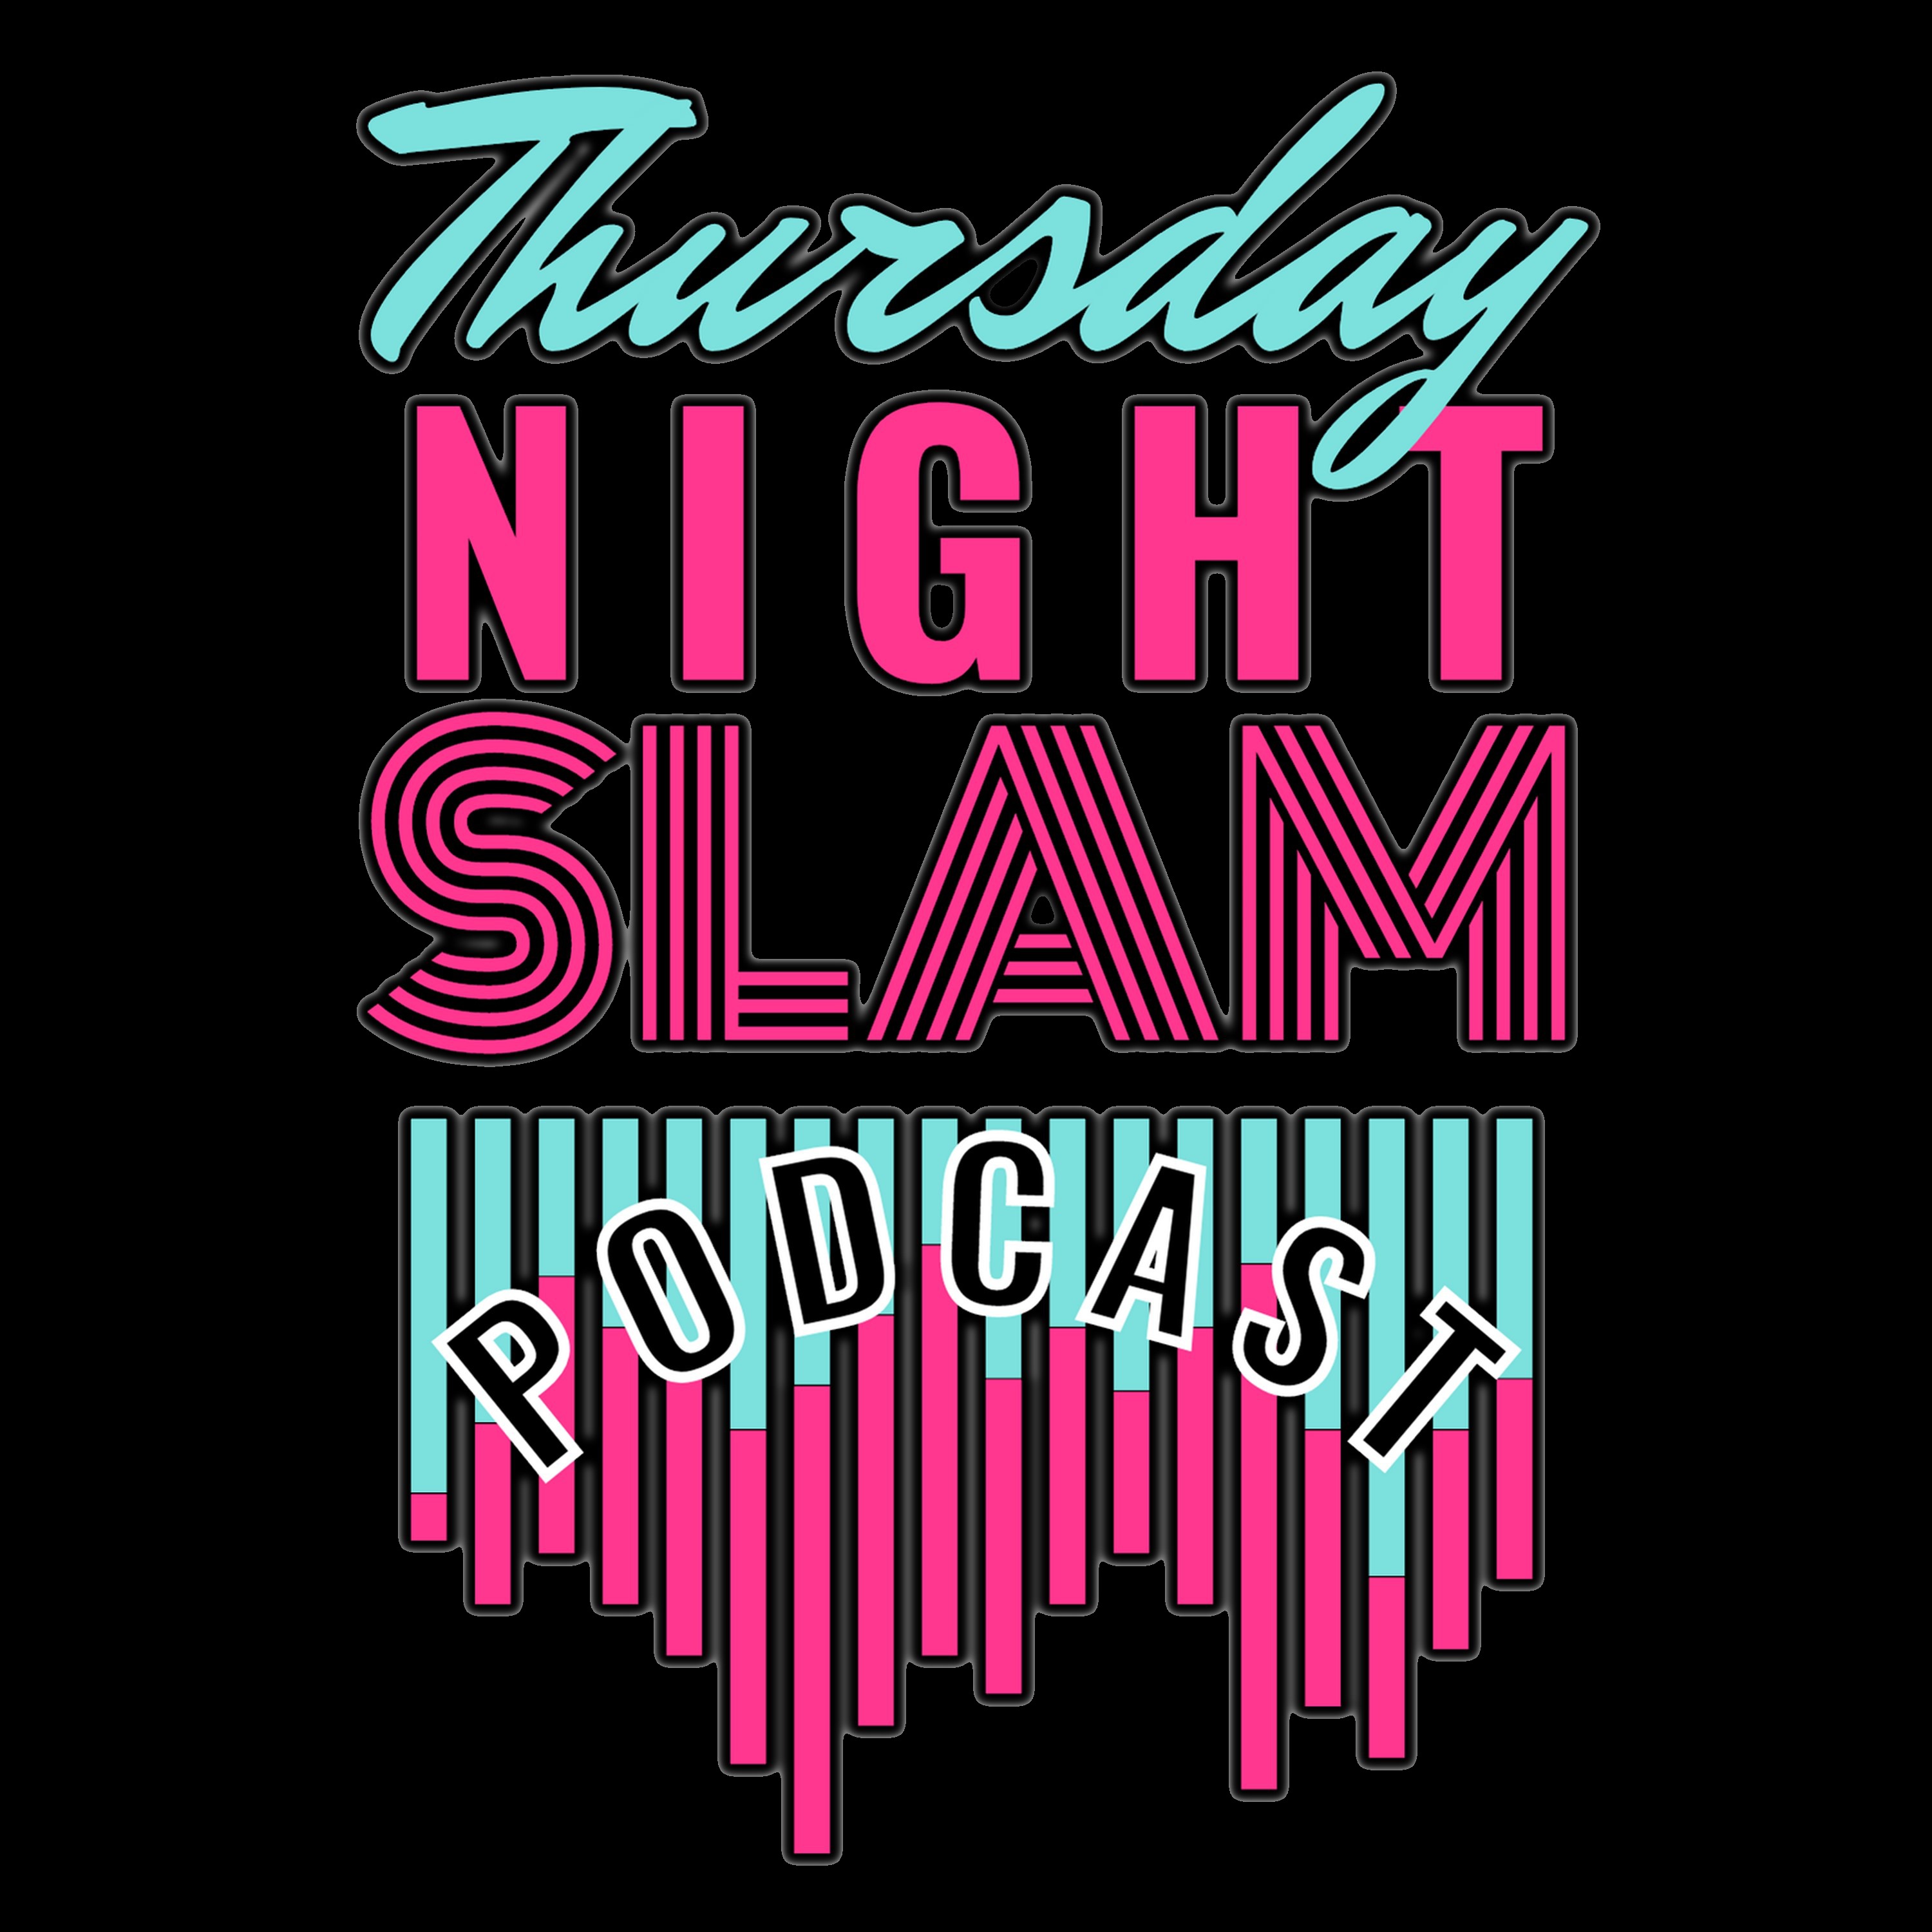 Thursday Night Slam S2:Ep13 (06-16-22) El Lucha King Felipe Jr